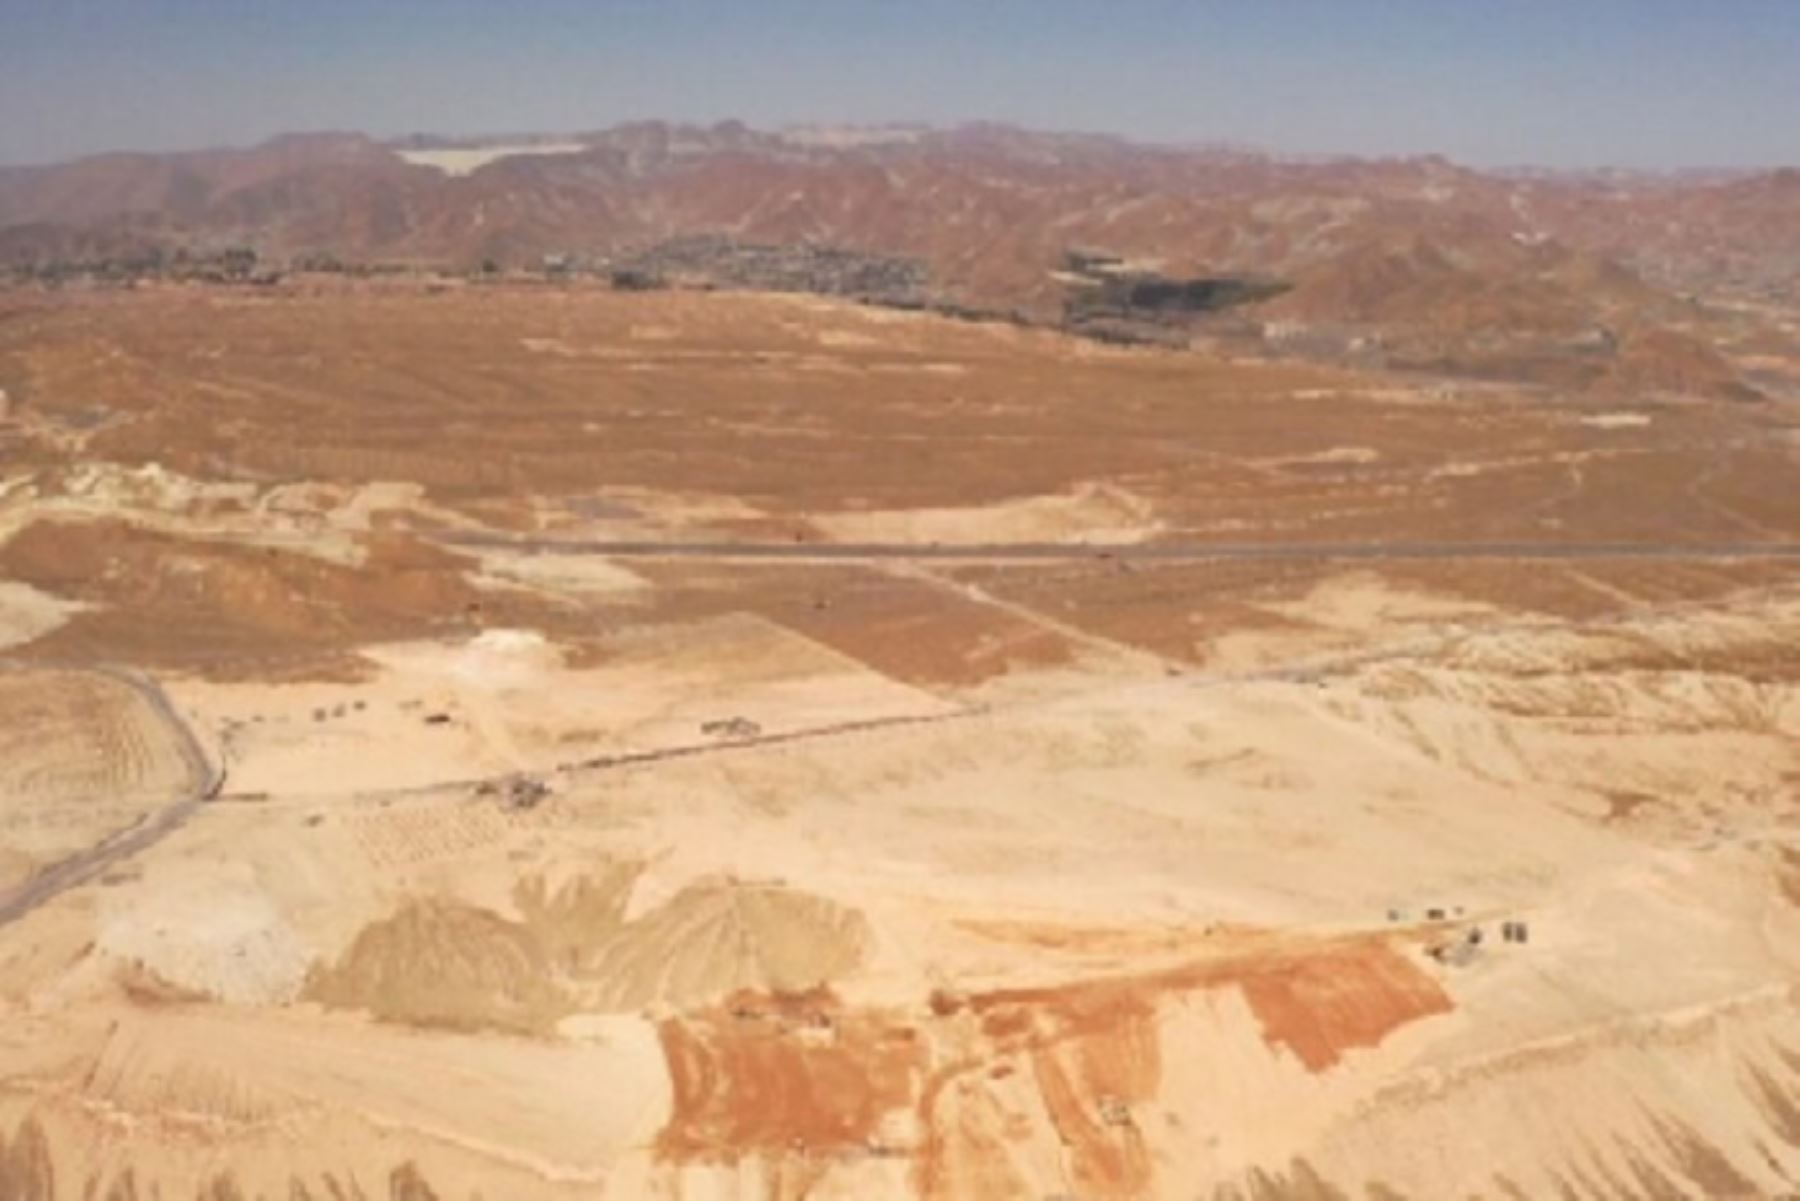 La Dirección Desconcentrada de Cultura de Arequipa realizó las inspecciones correspondientes, y concluyó que los mencionados trabajos de remoción de tierras y excavación no tienen lugar en la zona en la que se encuentran los petroglifos.